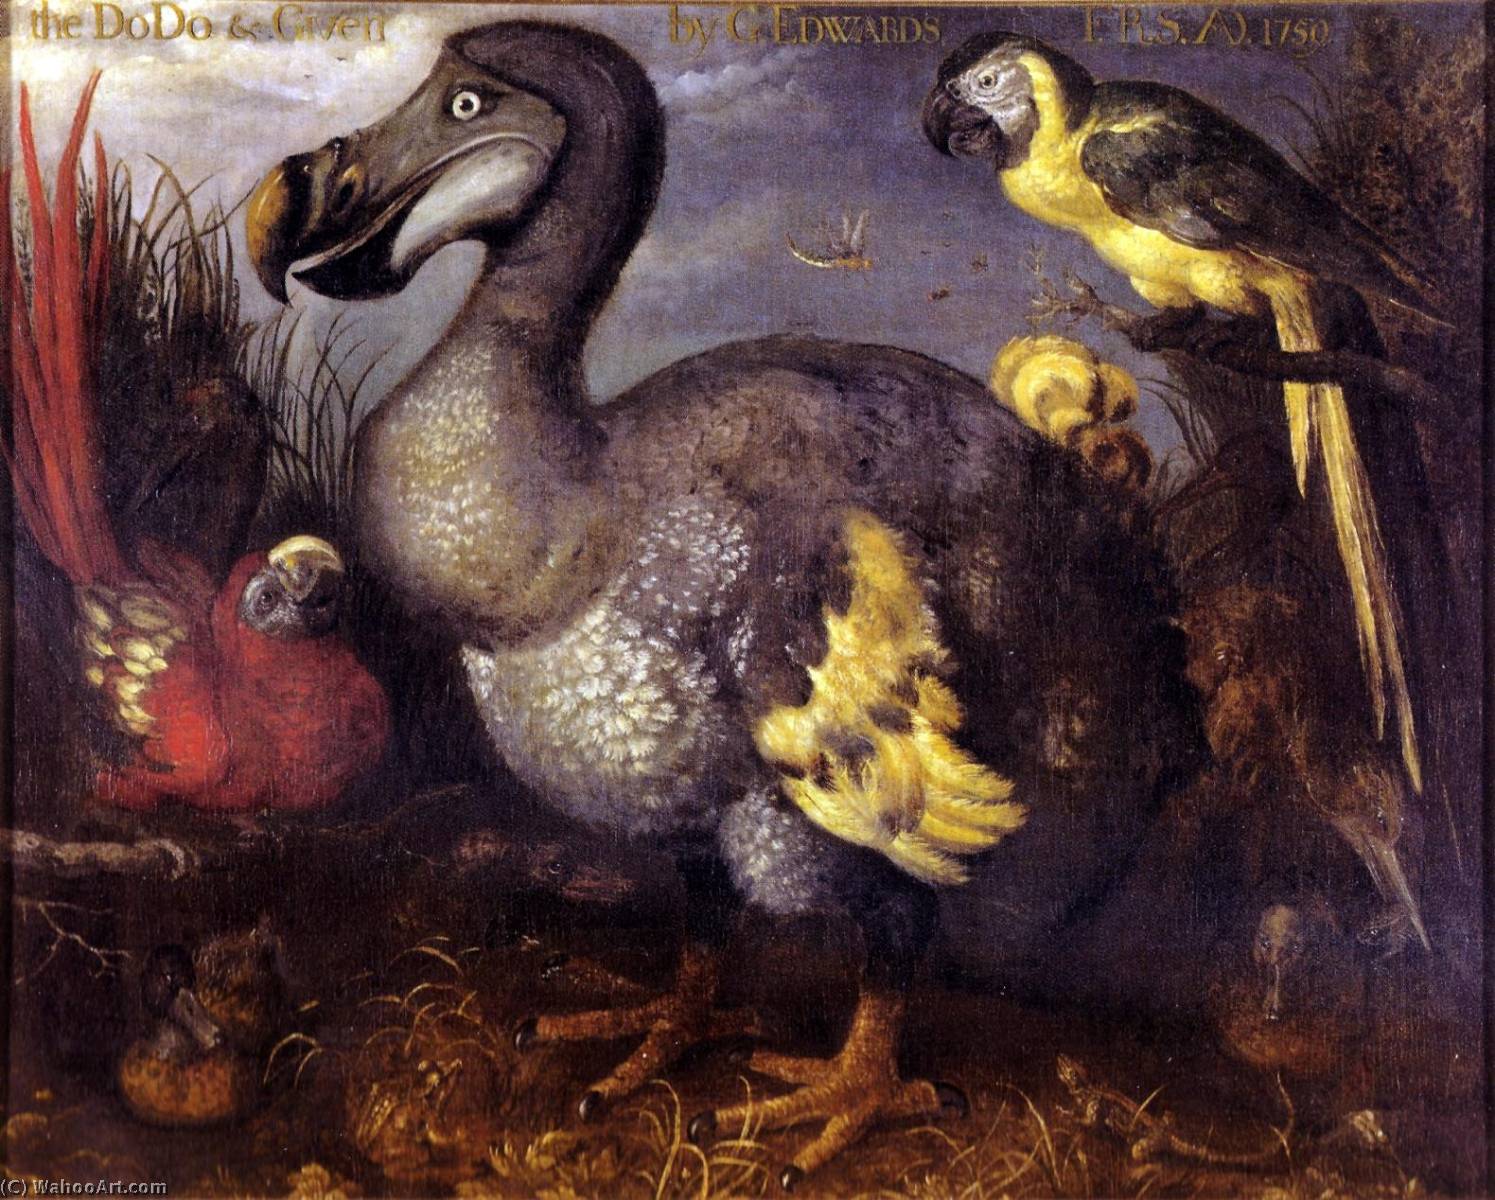 Wikioo.org – L'Encyclopédie des Beaux Arts - Peinture, Oeuvre de Roelant Savery - Edward's Le dodo